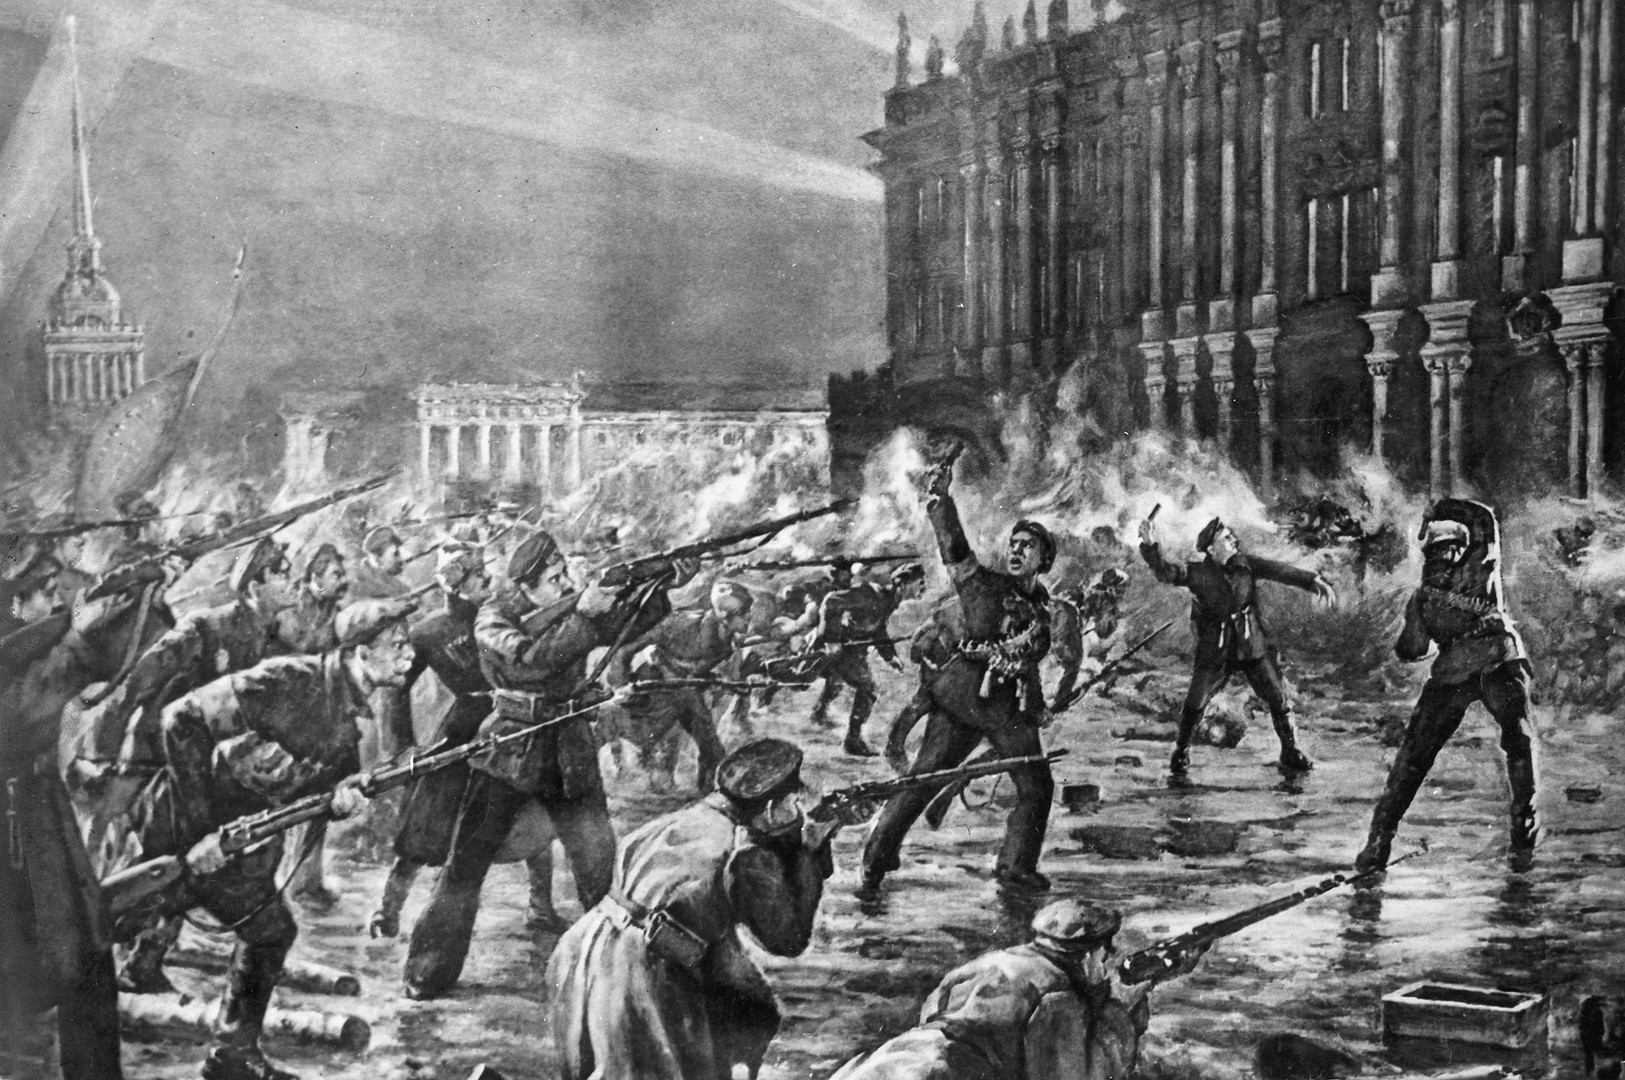 Pengawal Merah, yang terdiri atas tentara dan pelaut, menyerang bekas istana tsar (Istana Musim Dingin) pada November 1917.